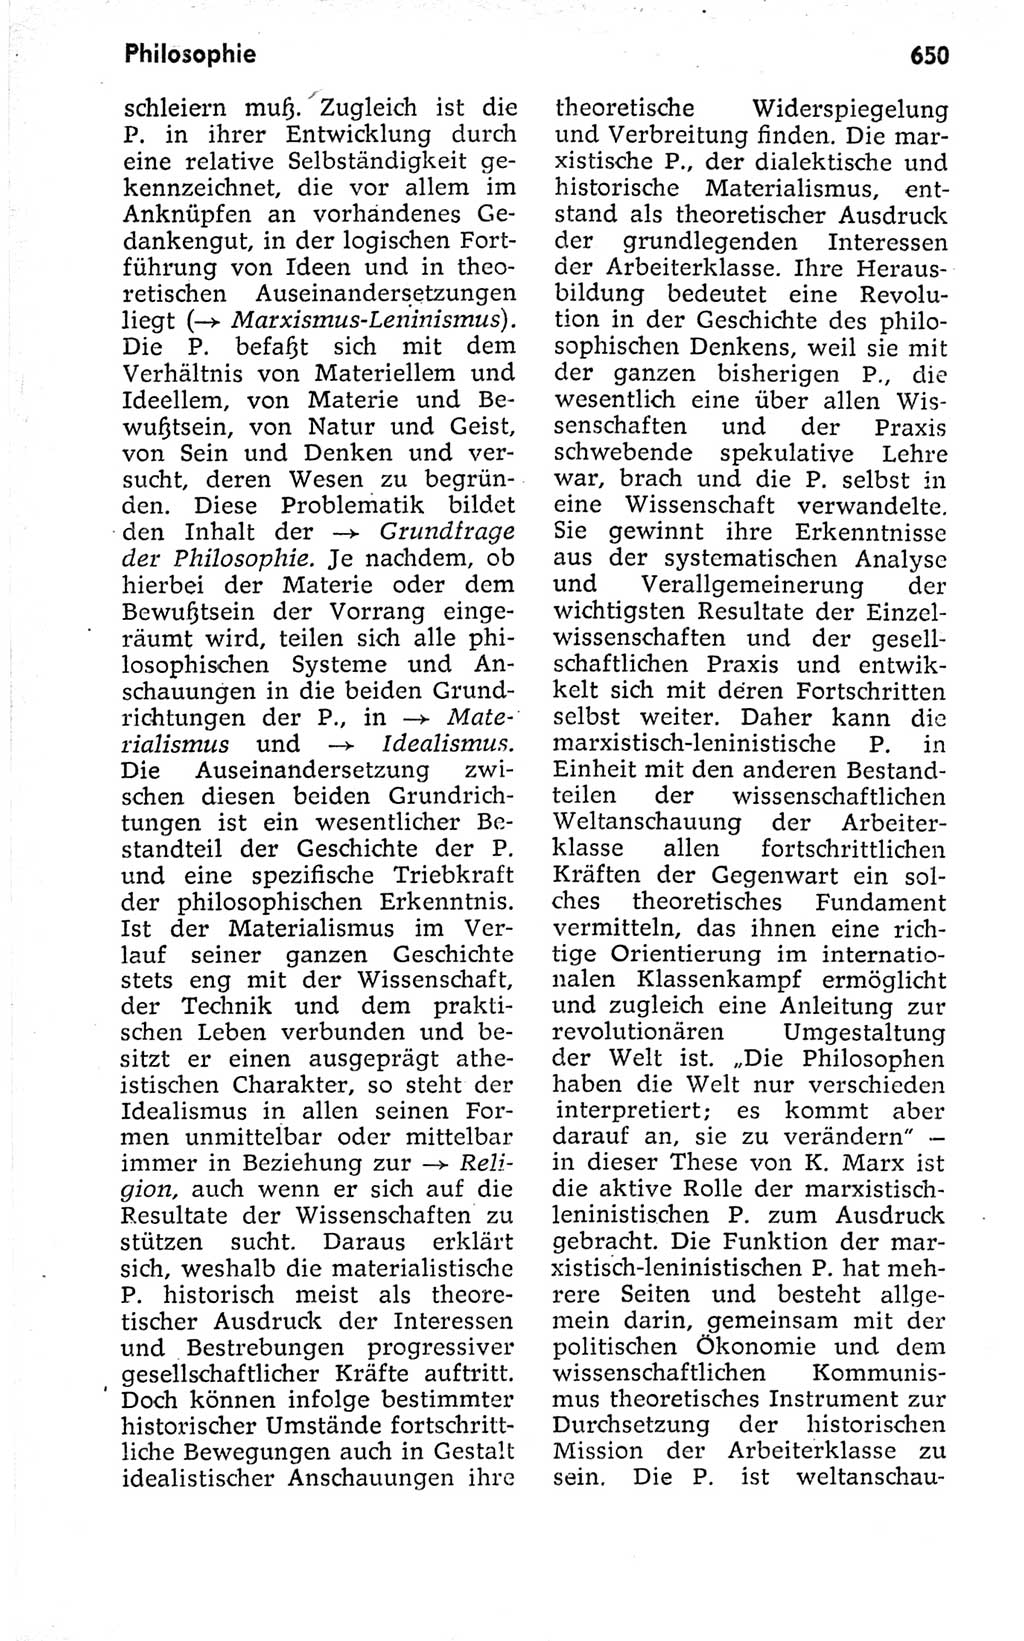 Kleines politisches Wörterbuch [Deutsche Demokratische Republik (DDR)] 1973, Seite 650 (Kl. pol. Wb. DDR 1973, S. 650)